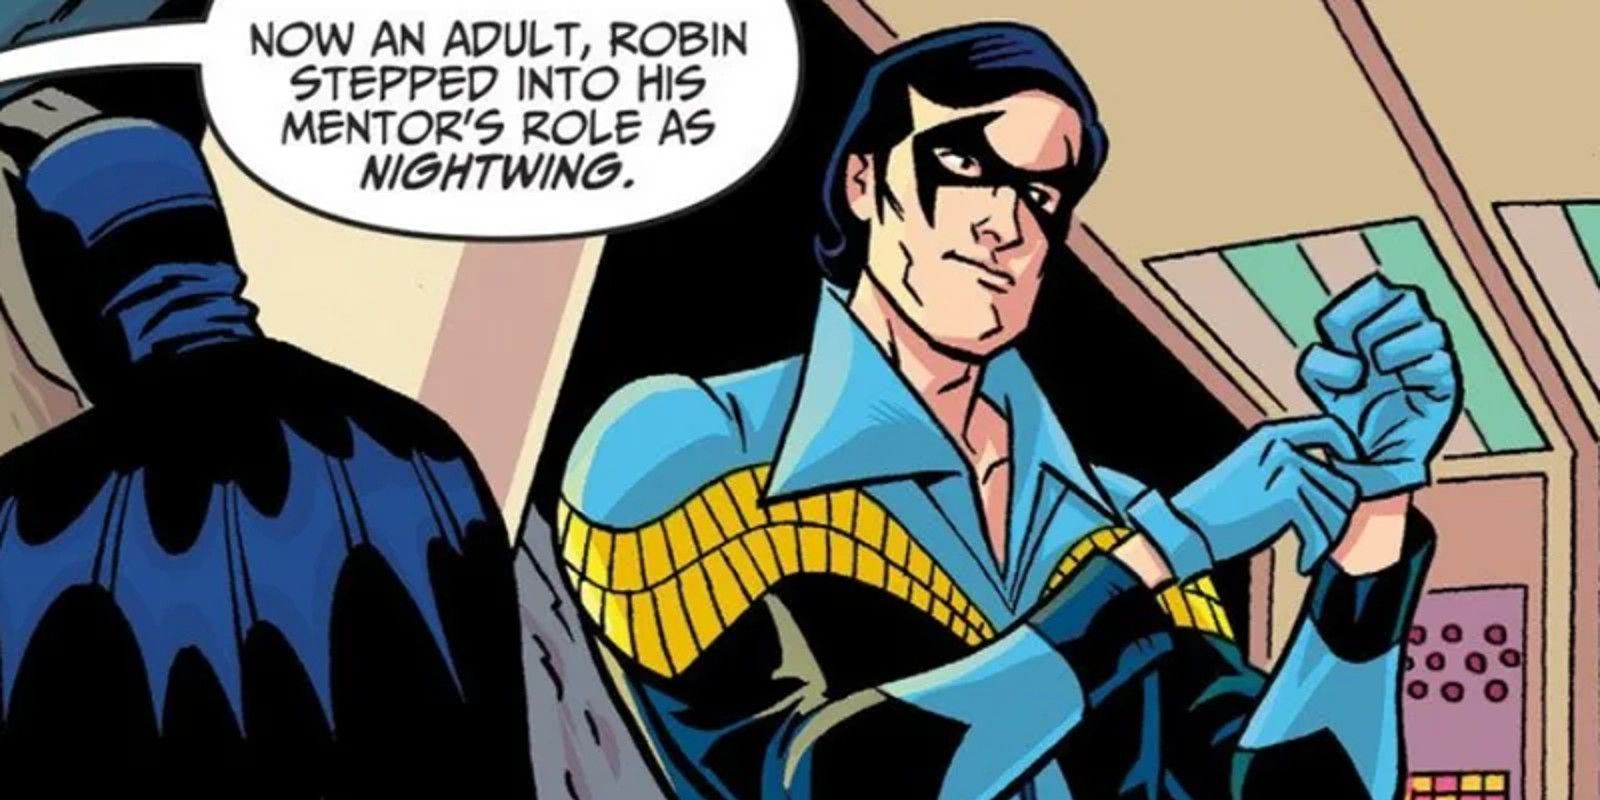 Dick Grayson Nightwing in Disco Costume in Batman '66 Comic